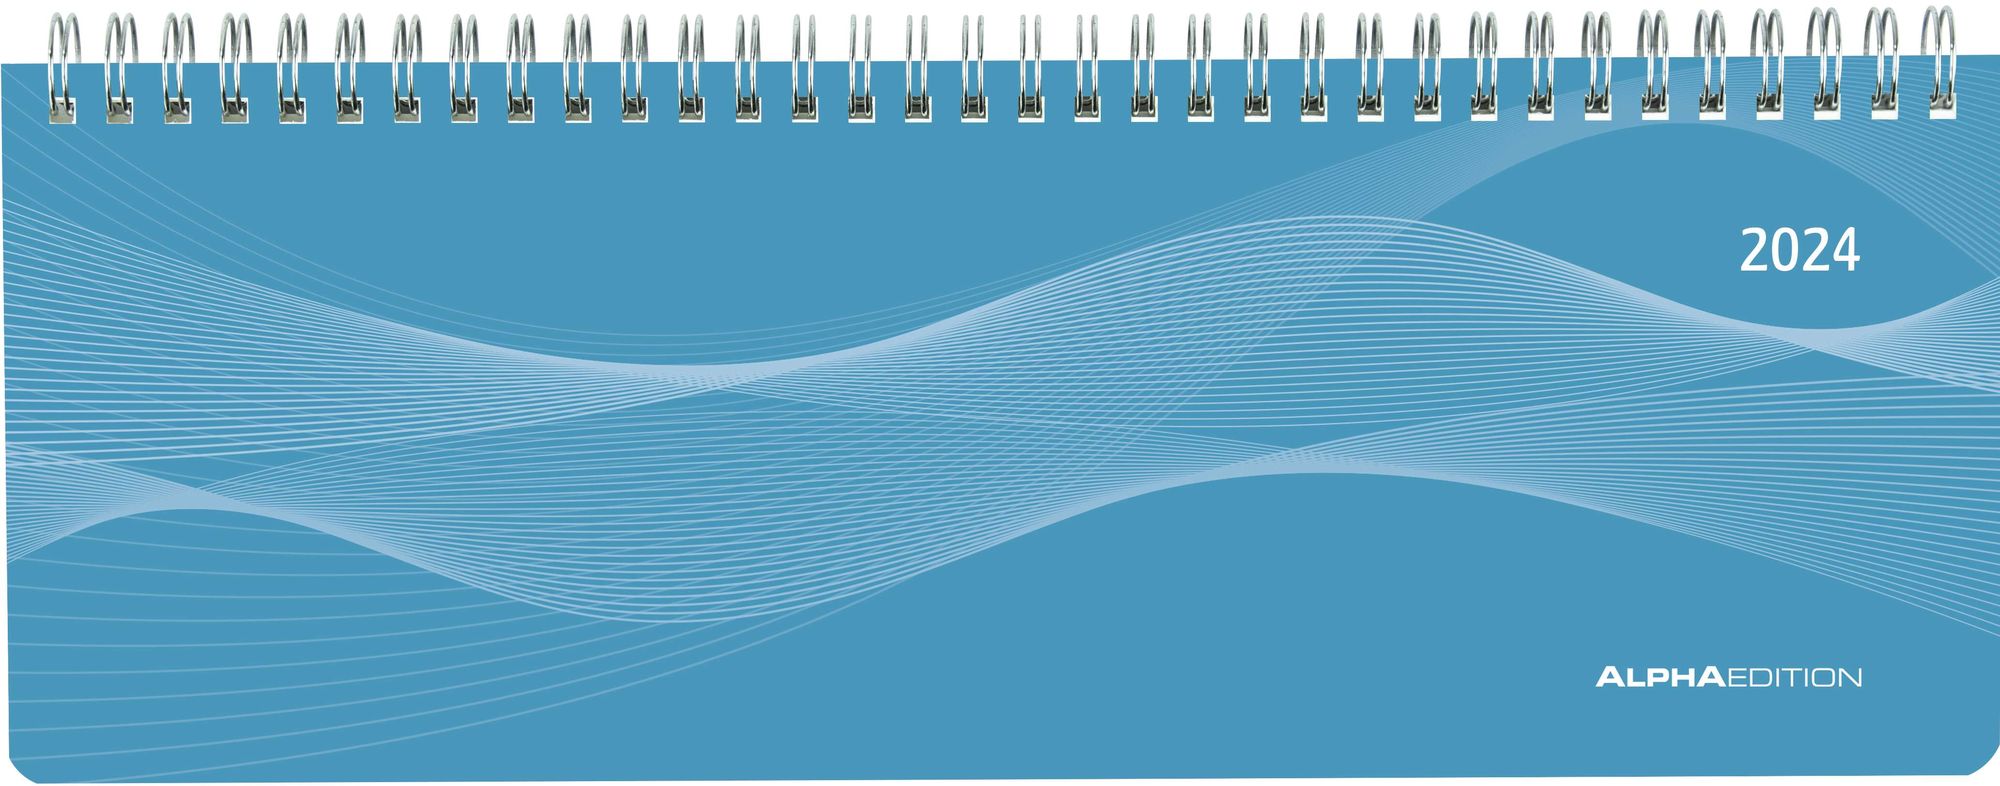 Tisch-Querkalender Profi blau 2024 - Büro-Planer 29,7x10,5 cm - Tisch- Kalender - 1 Woche 2 Seiten - Ringbindung - Alpha Edition' - 'Querkalender 